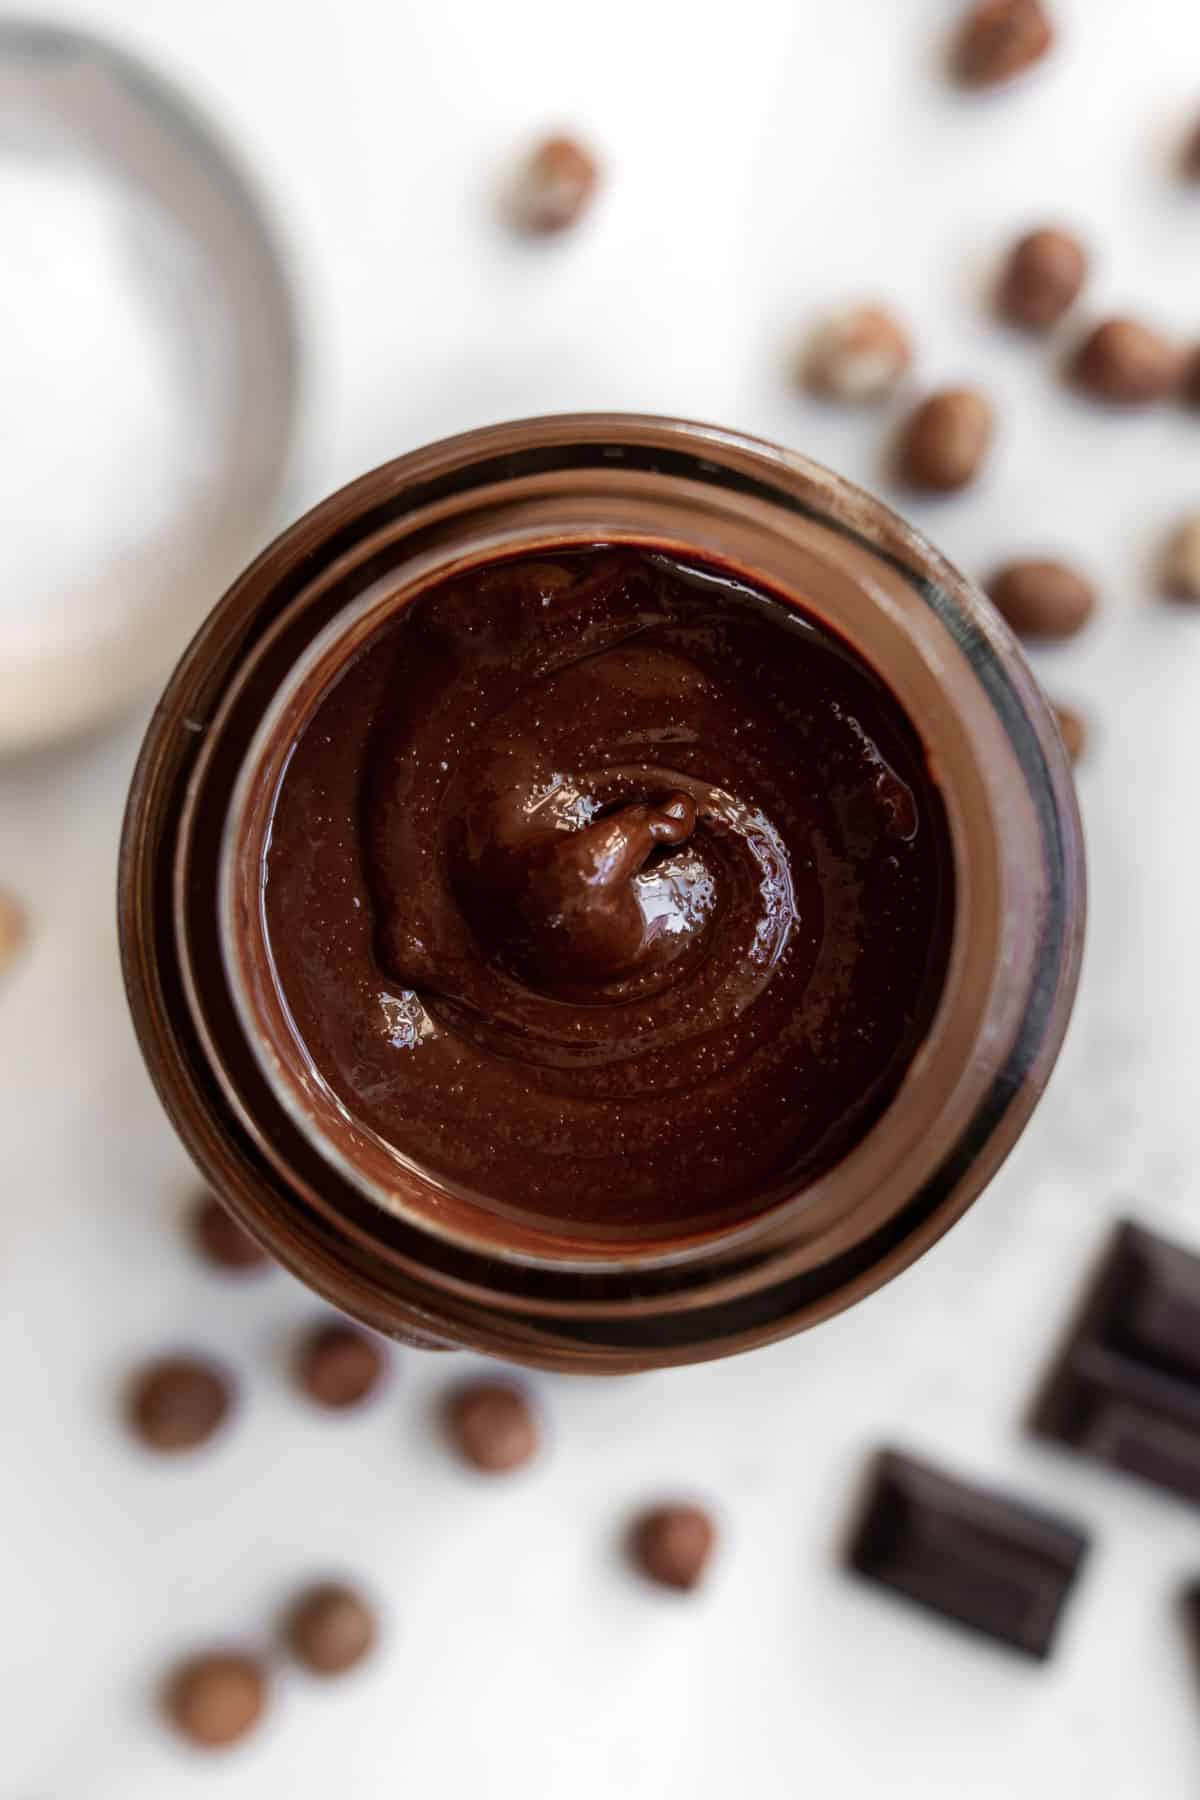 chocolate hazelnut spread in a jar with salt, chocolate squares and hazelnuts around it.